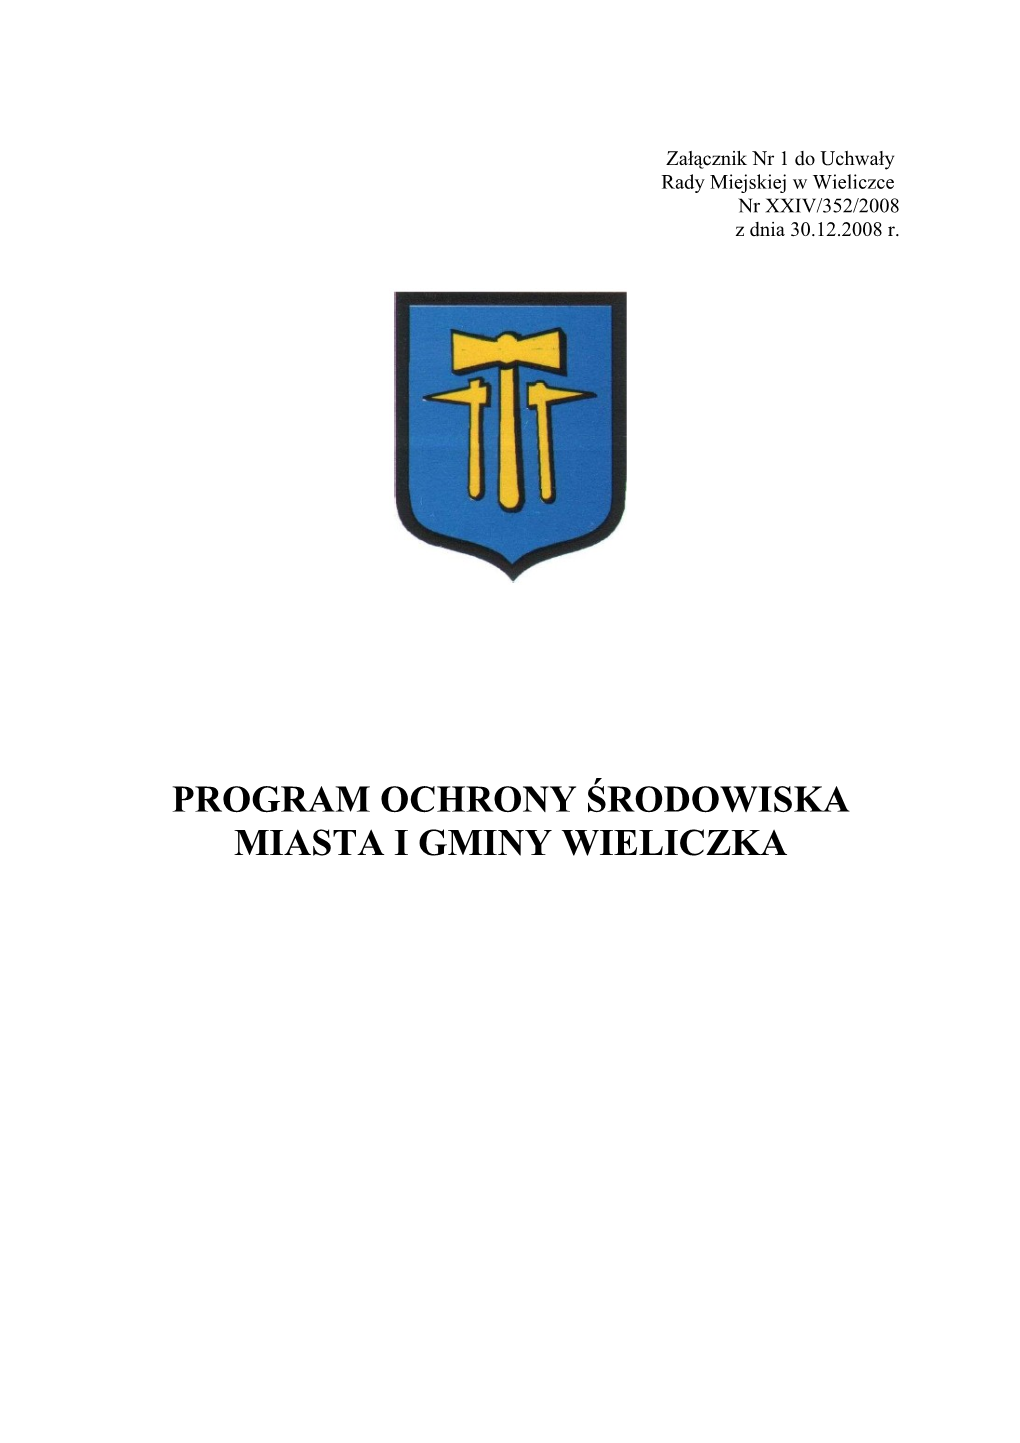 PROGRAM OCHRONY ŚRODOWISKA MIASTA I GMINY WIELICZKA Wieliczka, Grudzień 2008 R